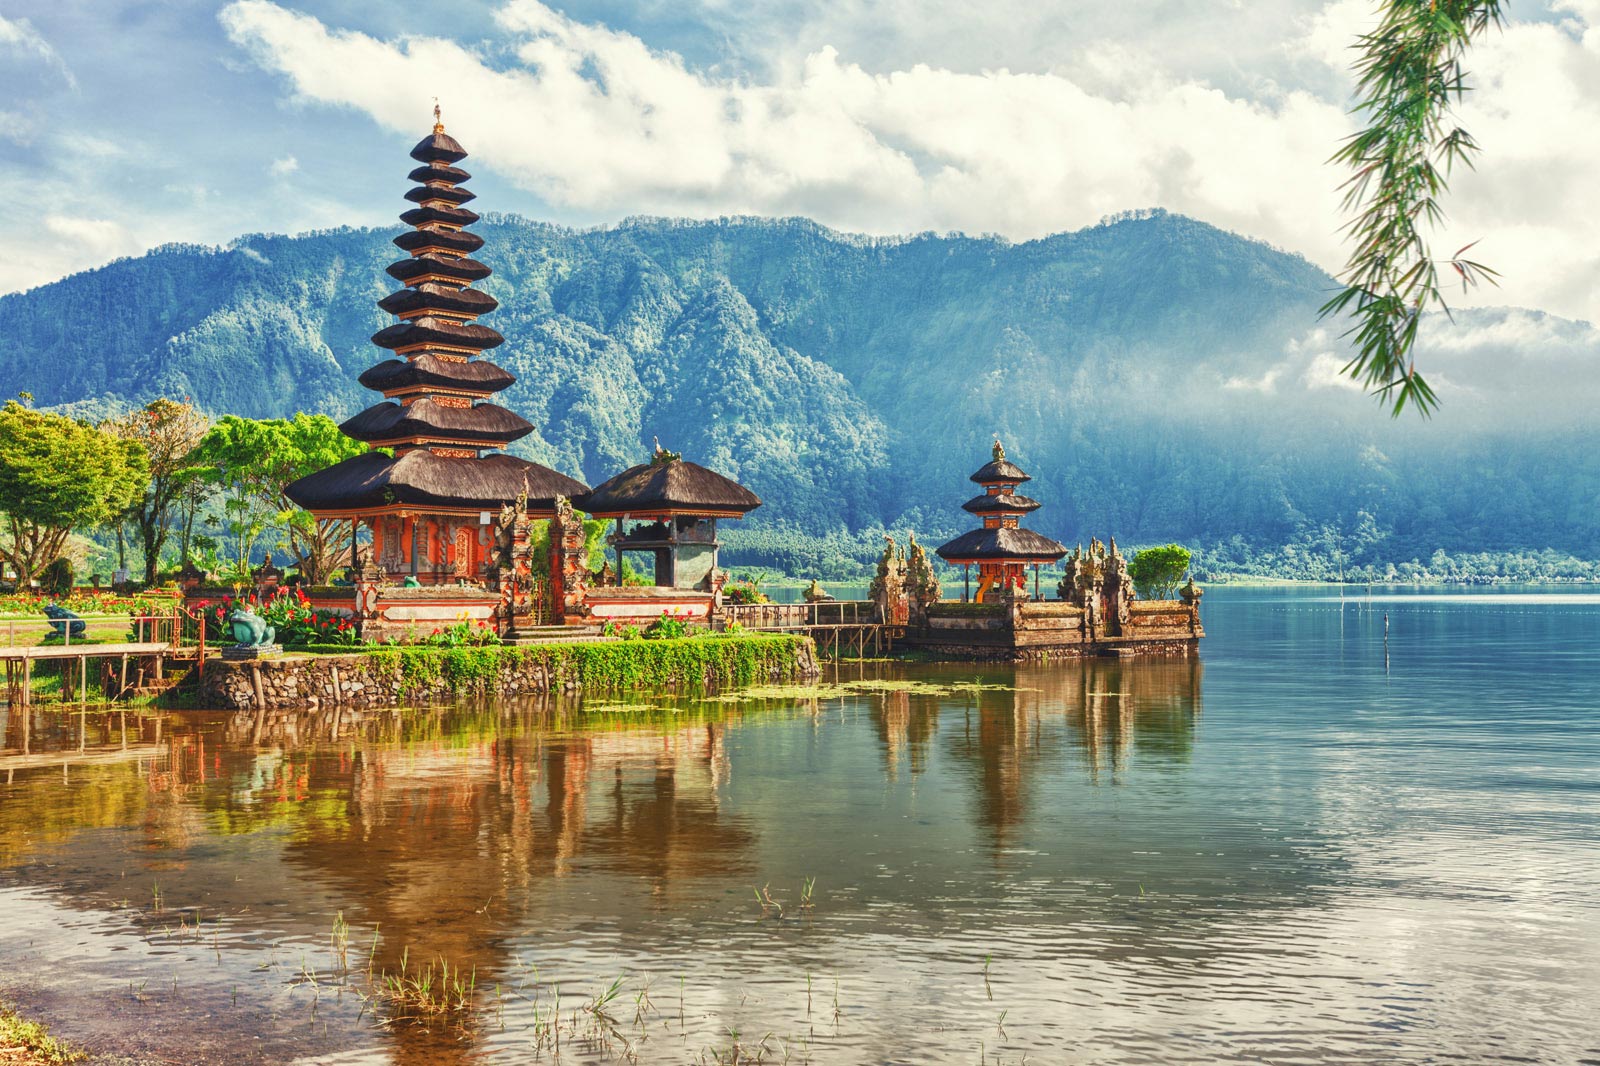 Paysage de Bali - Temple